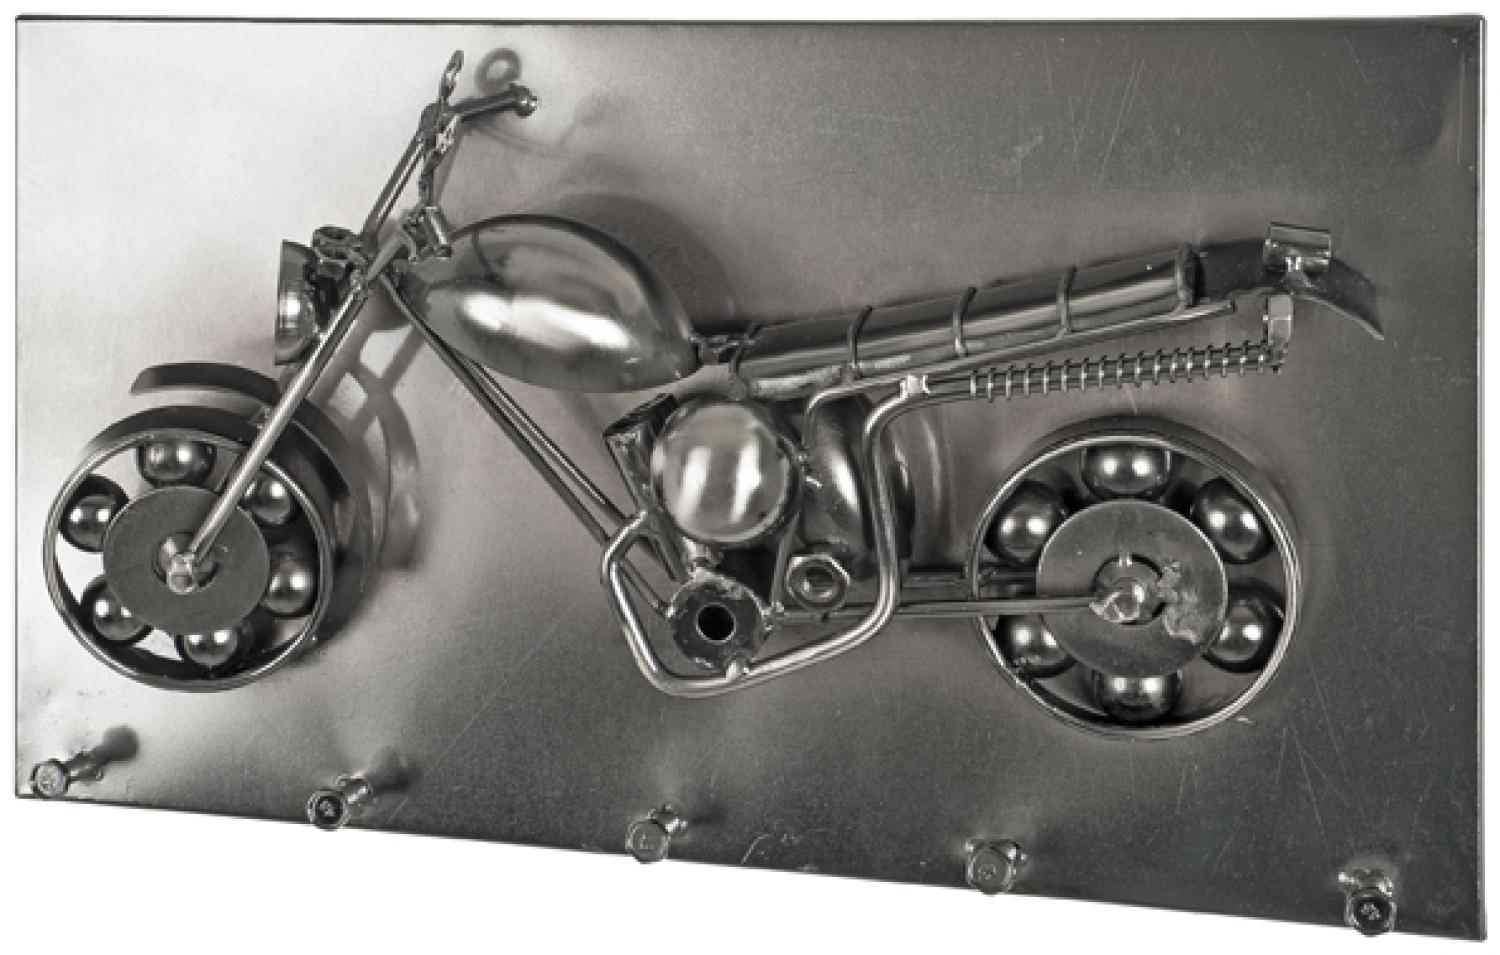 Garderobenhaken >Moto< in chrom dunkel aus Metall - 35x20x11cm (BxHxT) Bild 1